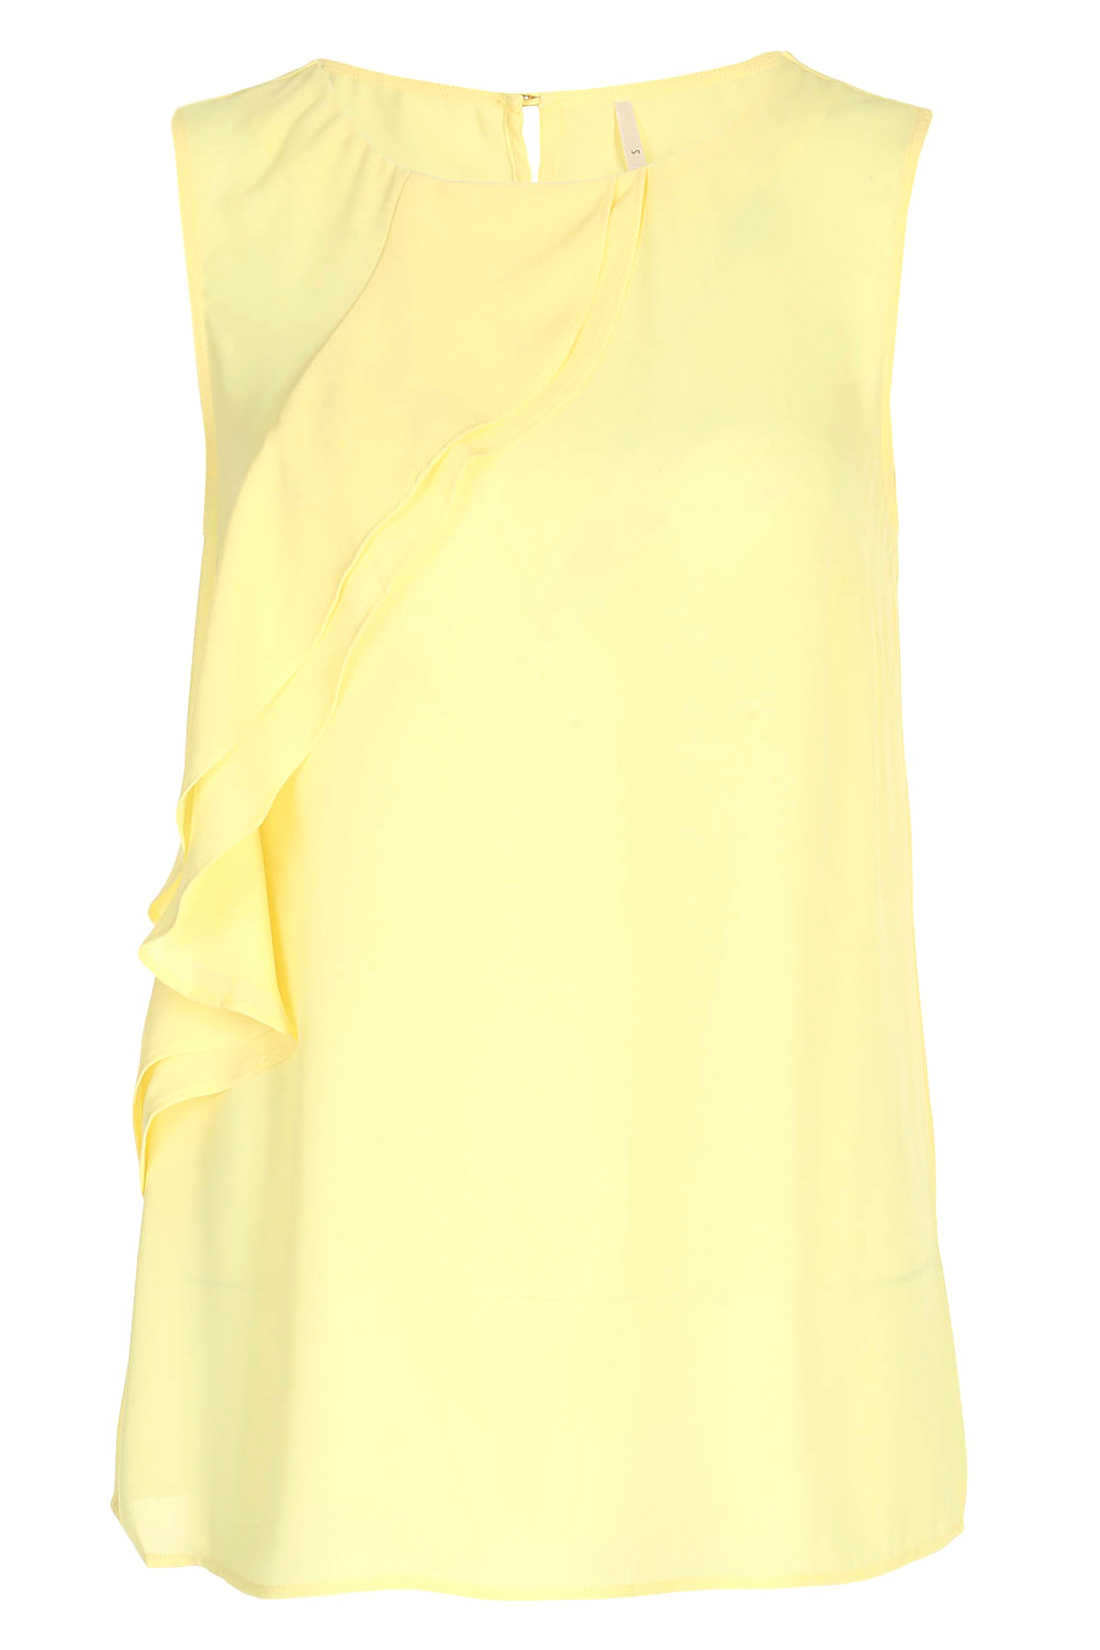 Топ с воланом (арт. baon B267025), размер L, цвет желтый Топ с воланом (арт. baon B267025) - фото 4